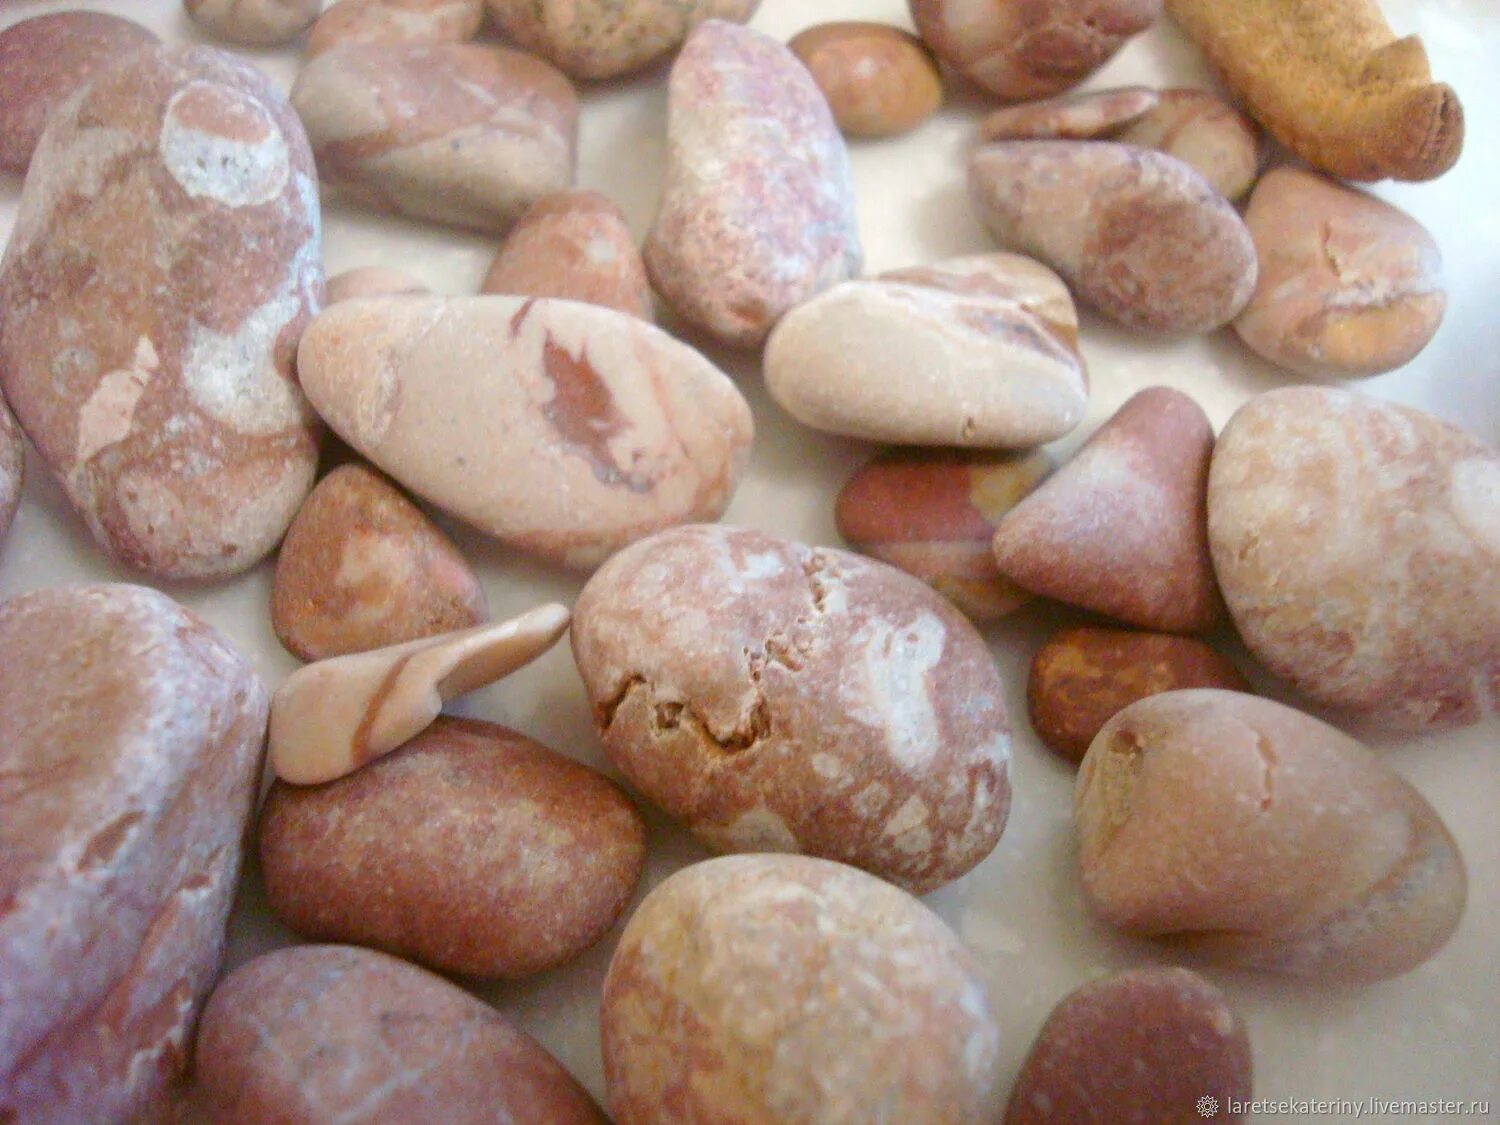 Морские камни купить. Морская галька. Галька природные материалы. Розовая галька. Галька Черноморская.